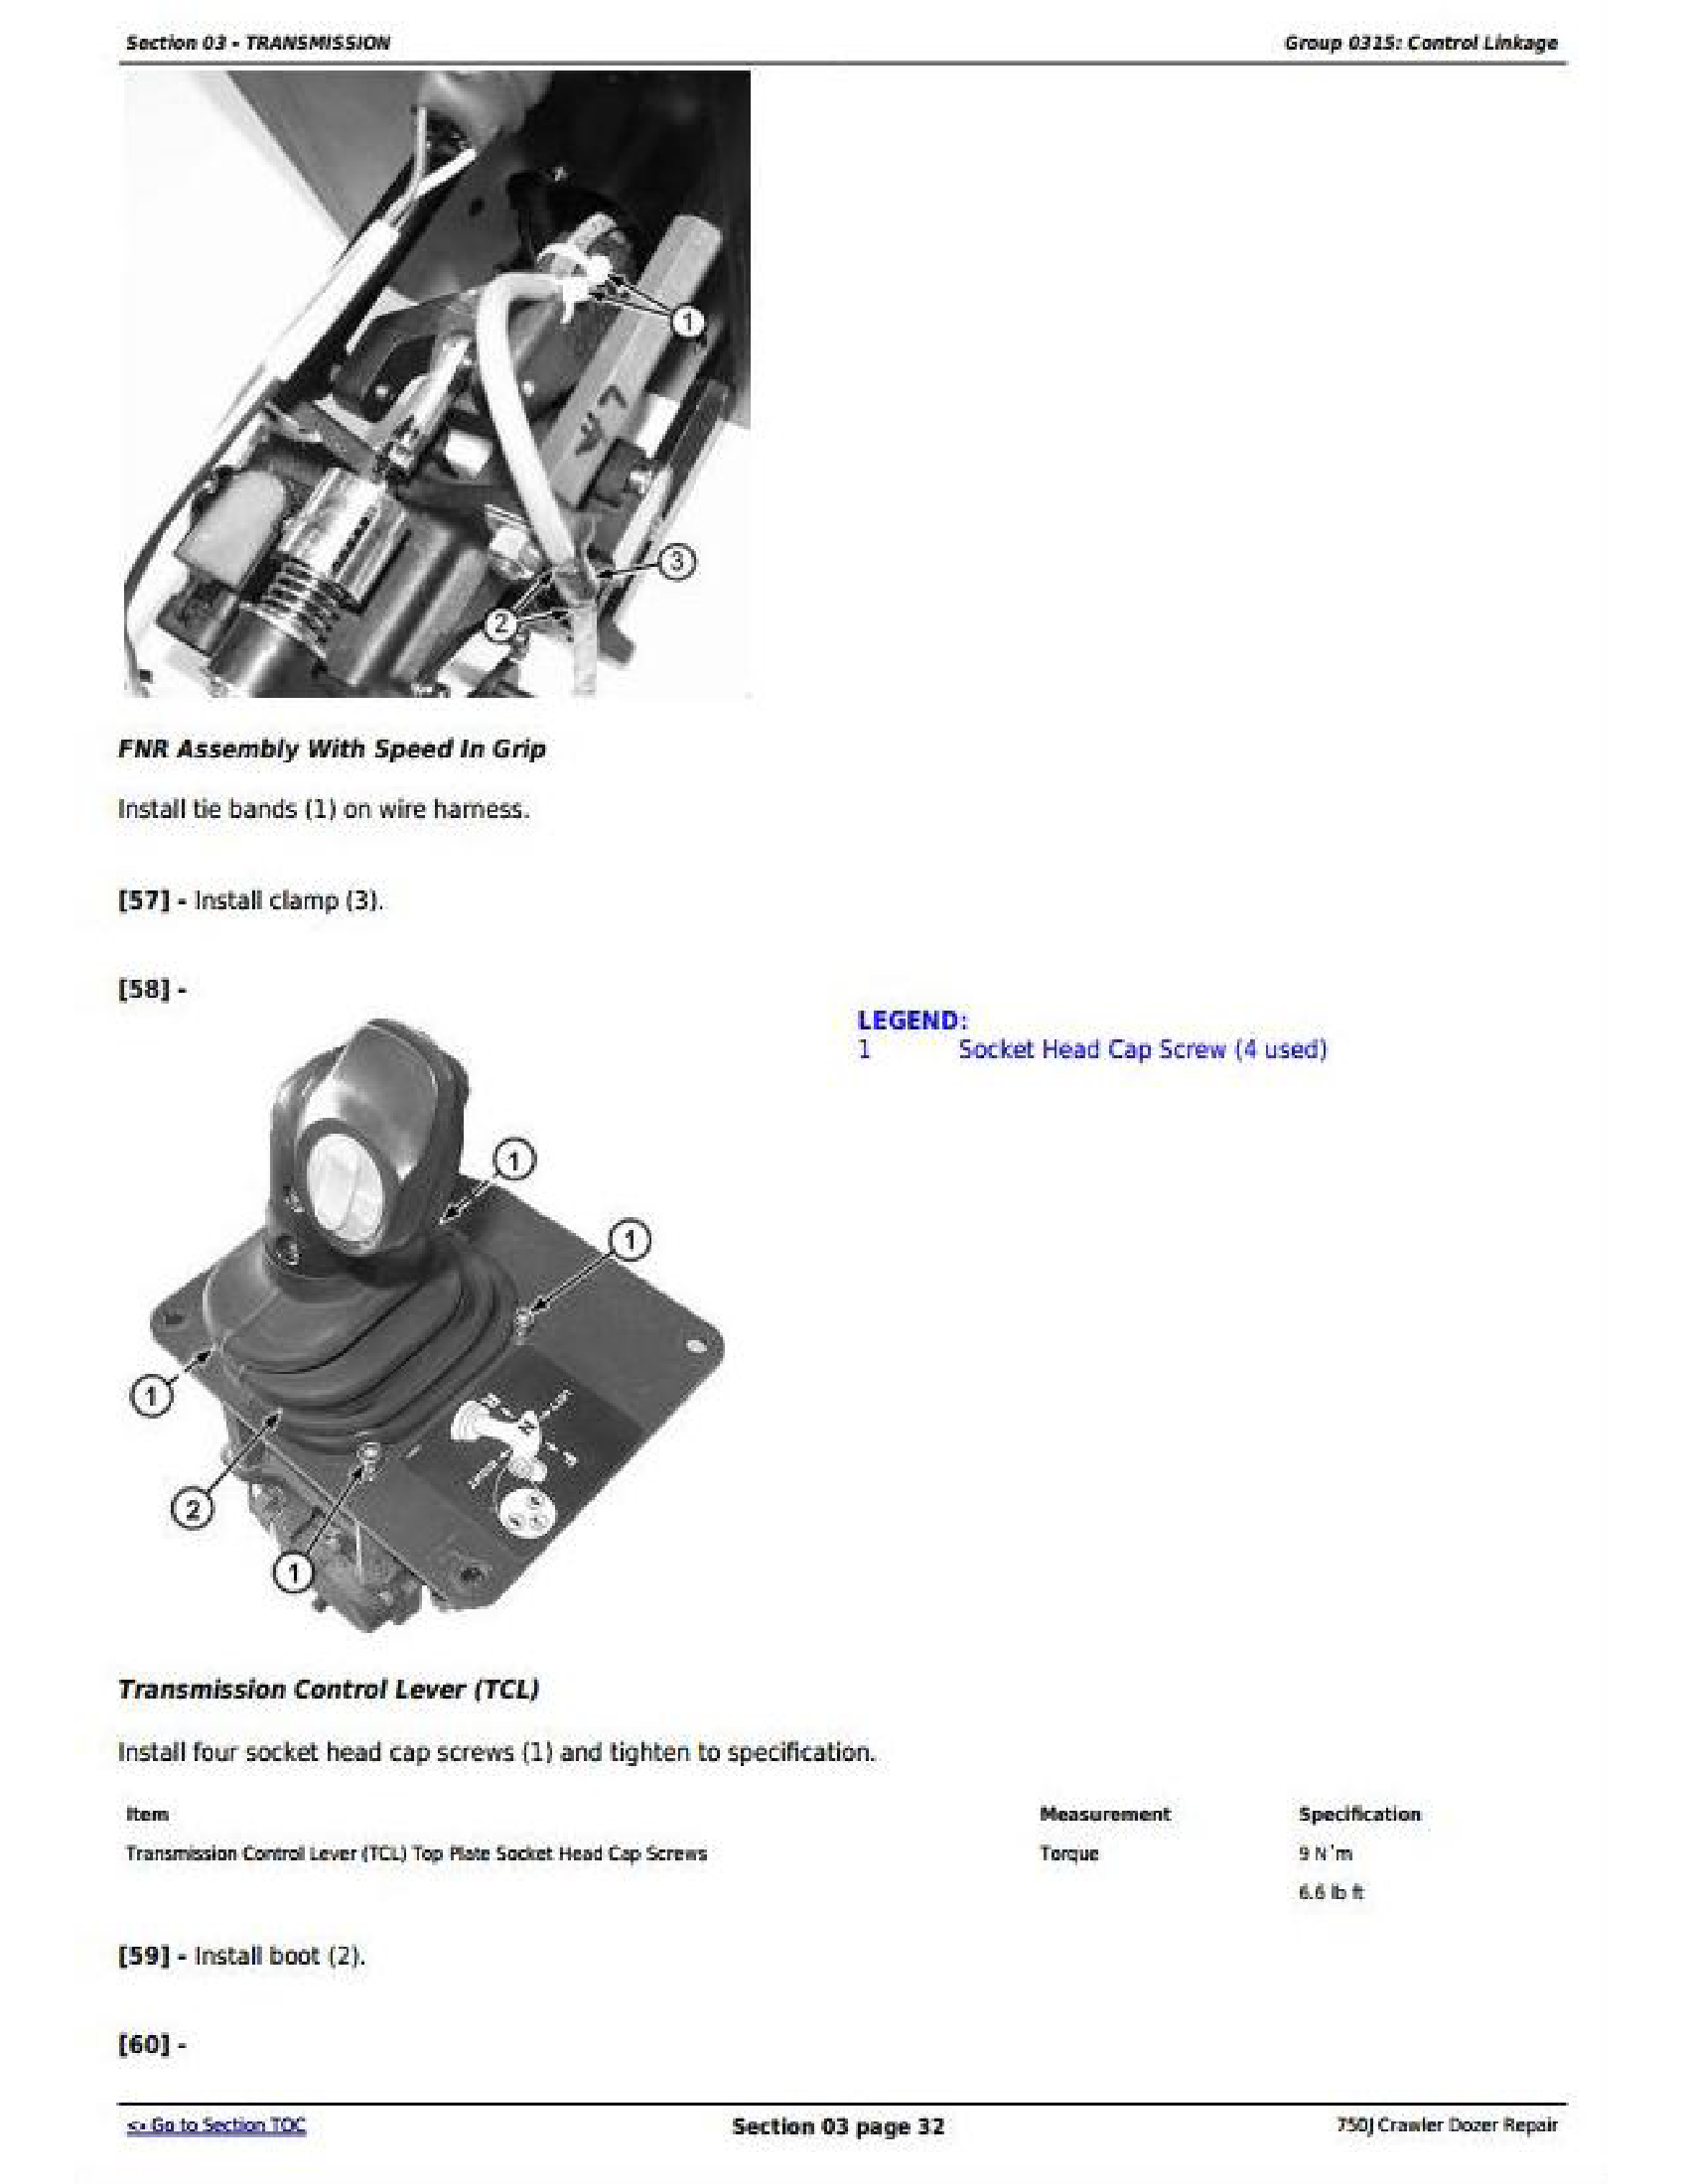 John Deere 672GP manual pdf